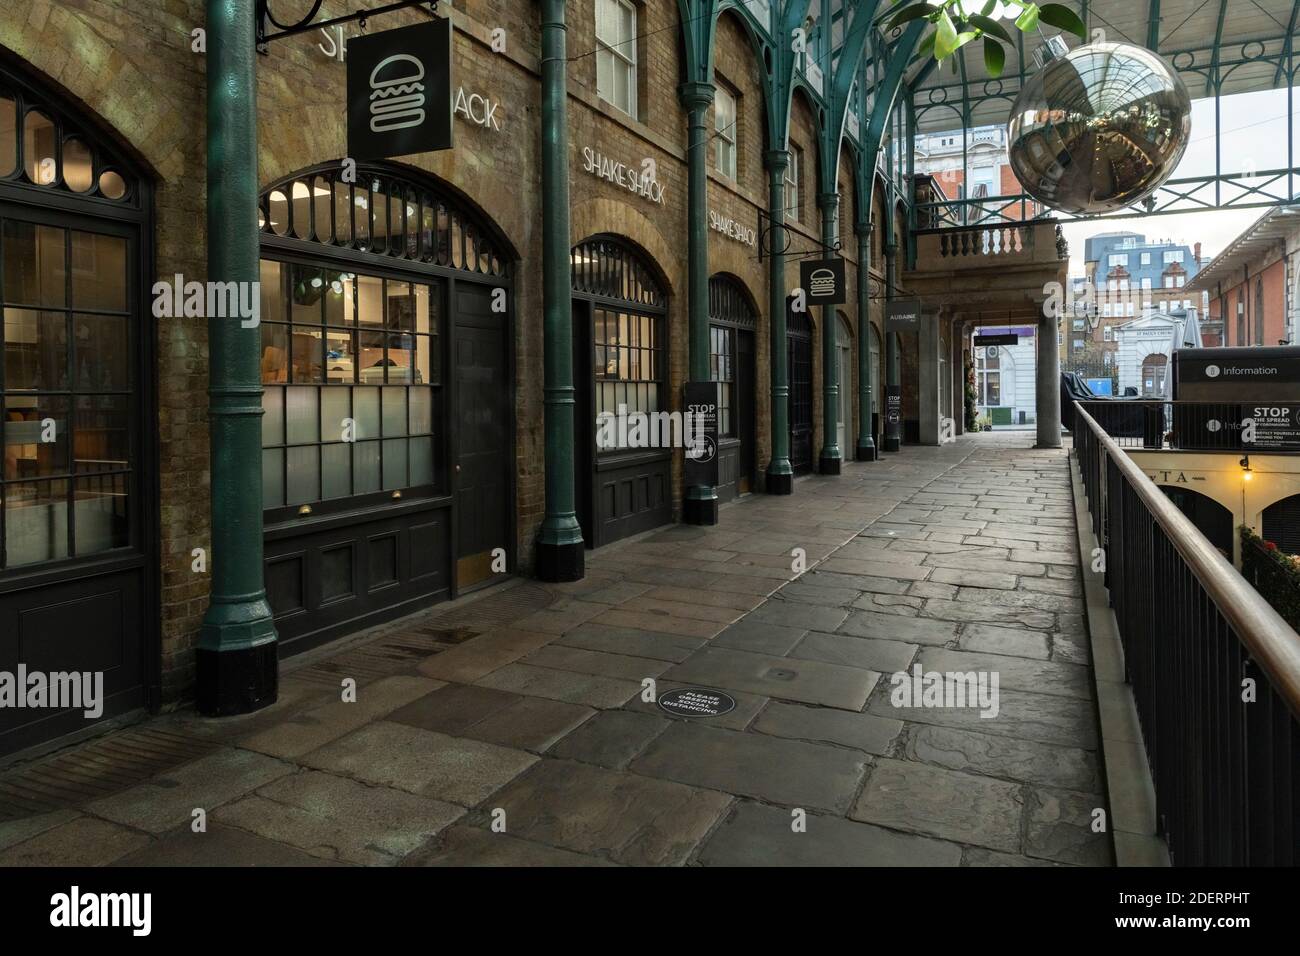 Londres dans le quartier du coronavirus bloqué au marché de Covent Garden, avec des routes vides, des rues désertes tranquilles, aucune personne et des magasins fermés fermés fermés dans une zone touristique normalement populaire pendant la pandémie du coronavirus en Angleterre, en Europe Banque D'Images